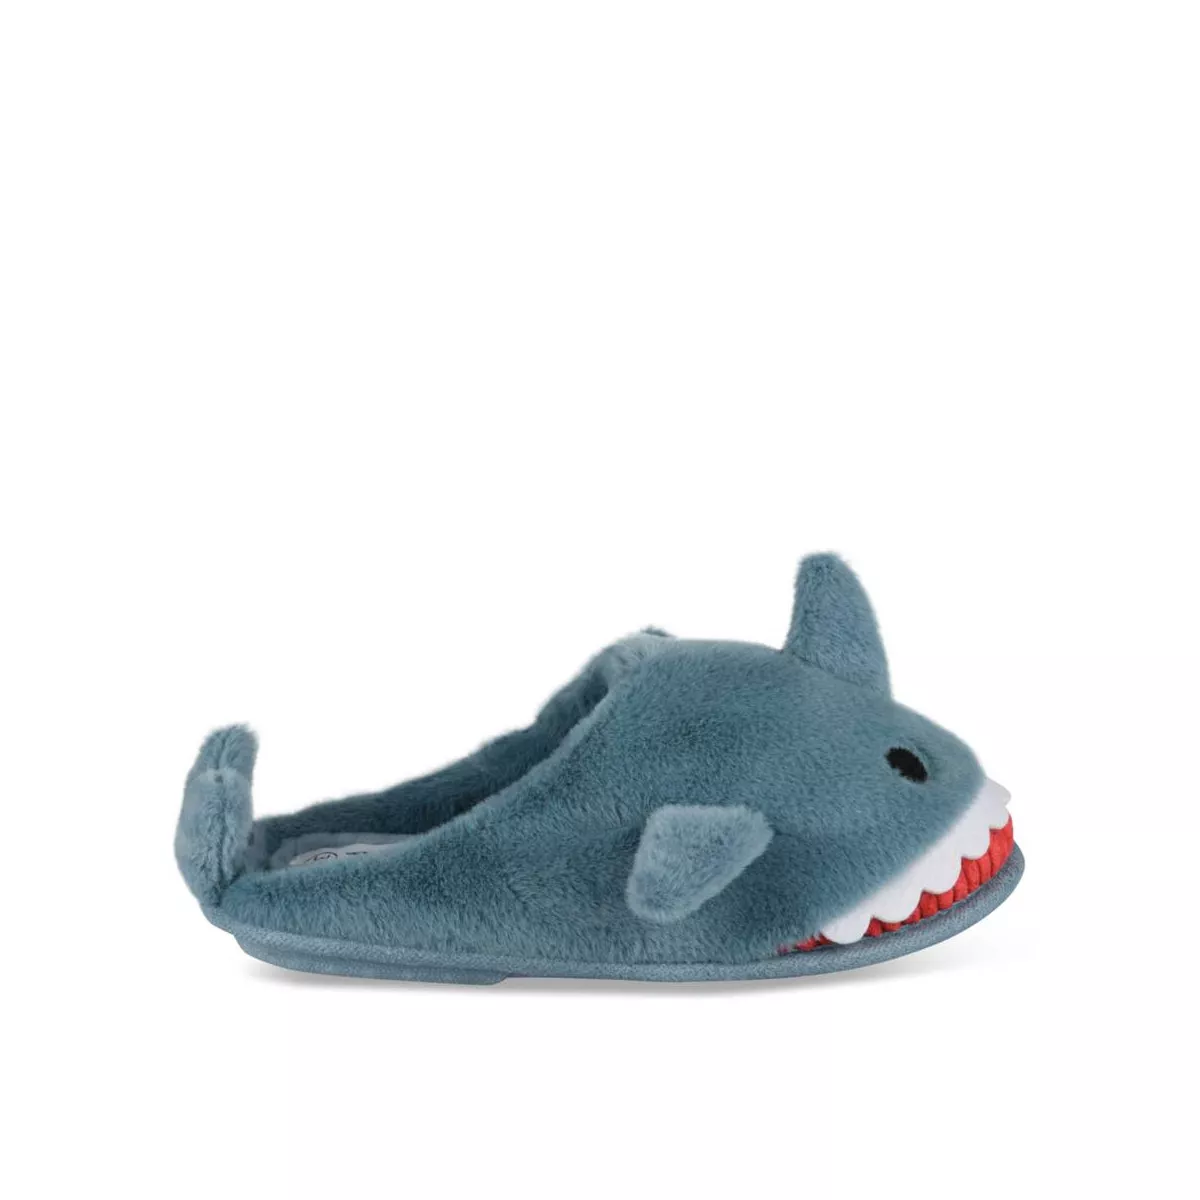 Chaussons chauds peluche requin à enfiler La Redoute Collections bleu  enfant